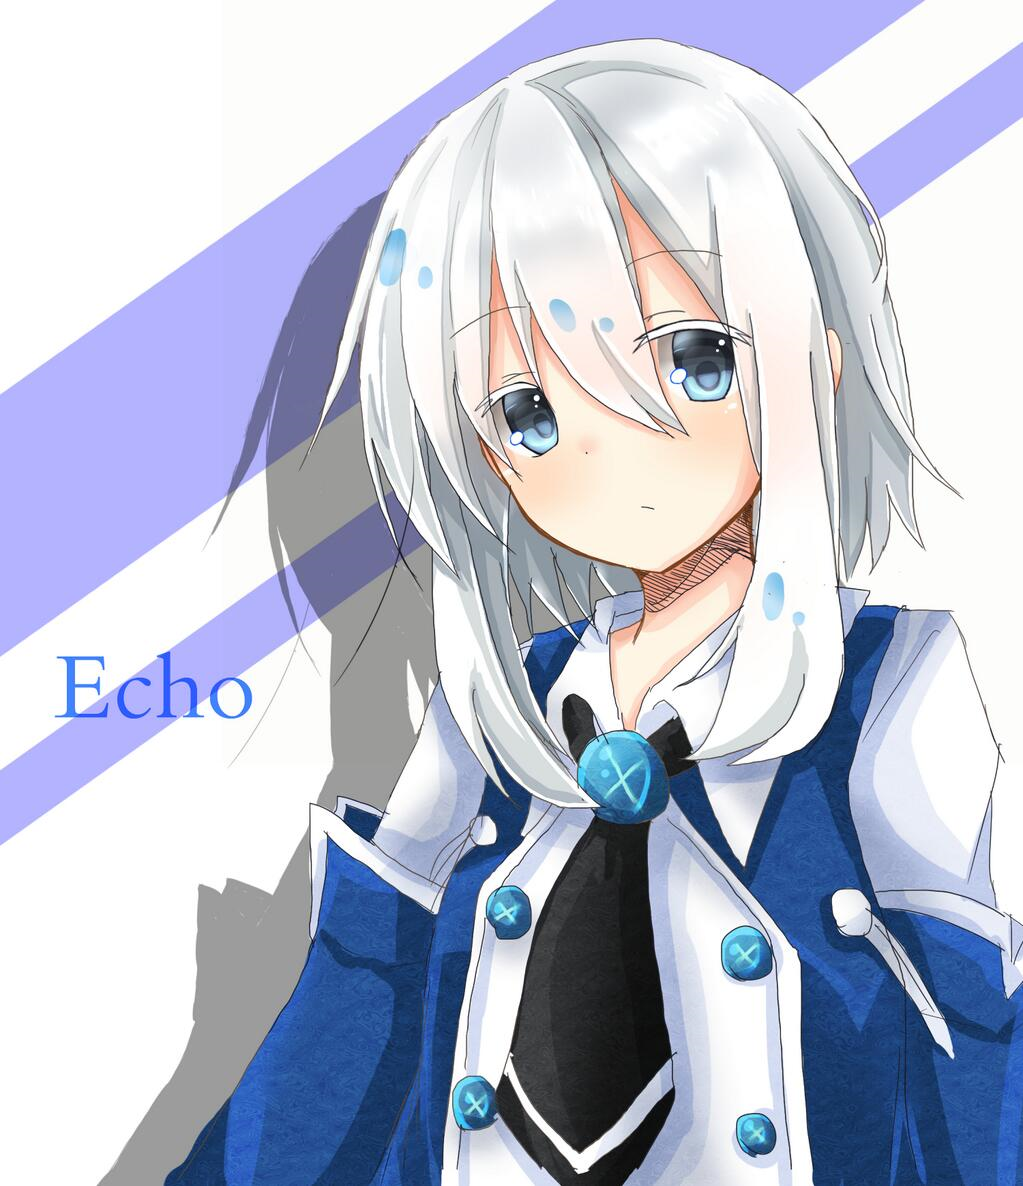 1girl :/ blue_eyes character_name echo looking_at_viewer pandora_hearts short_hair silver_hair sketch yaminekokuro